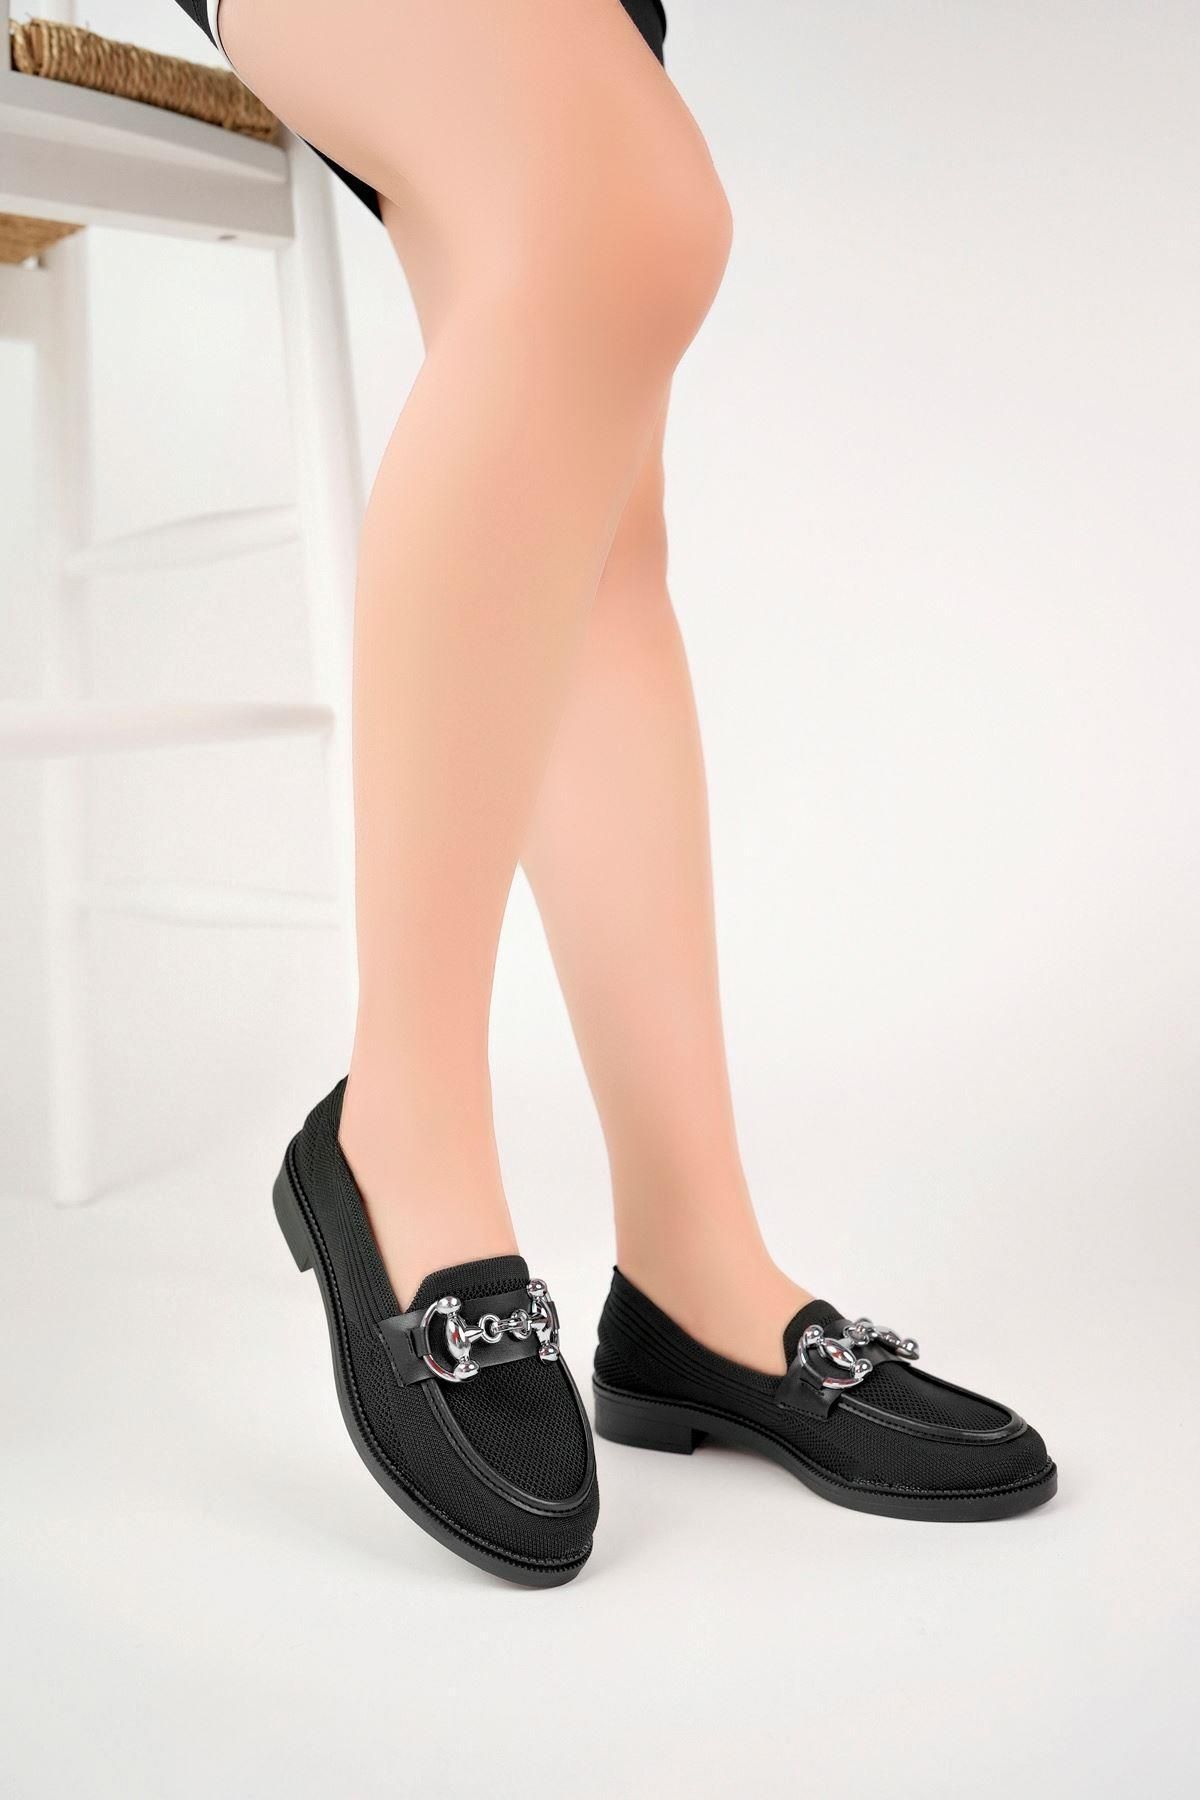 Aymood Kadın Siyah Zincir Tokalı Kalın Taban Pu Deri Günlük Klasik Topuklu Loafer Makosen Ayakkabı